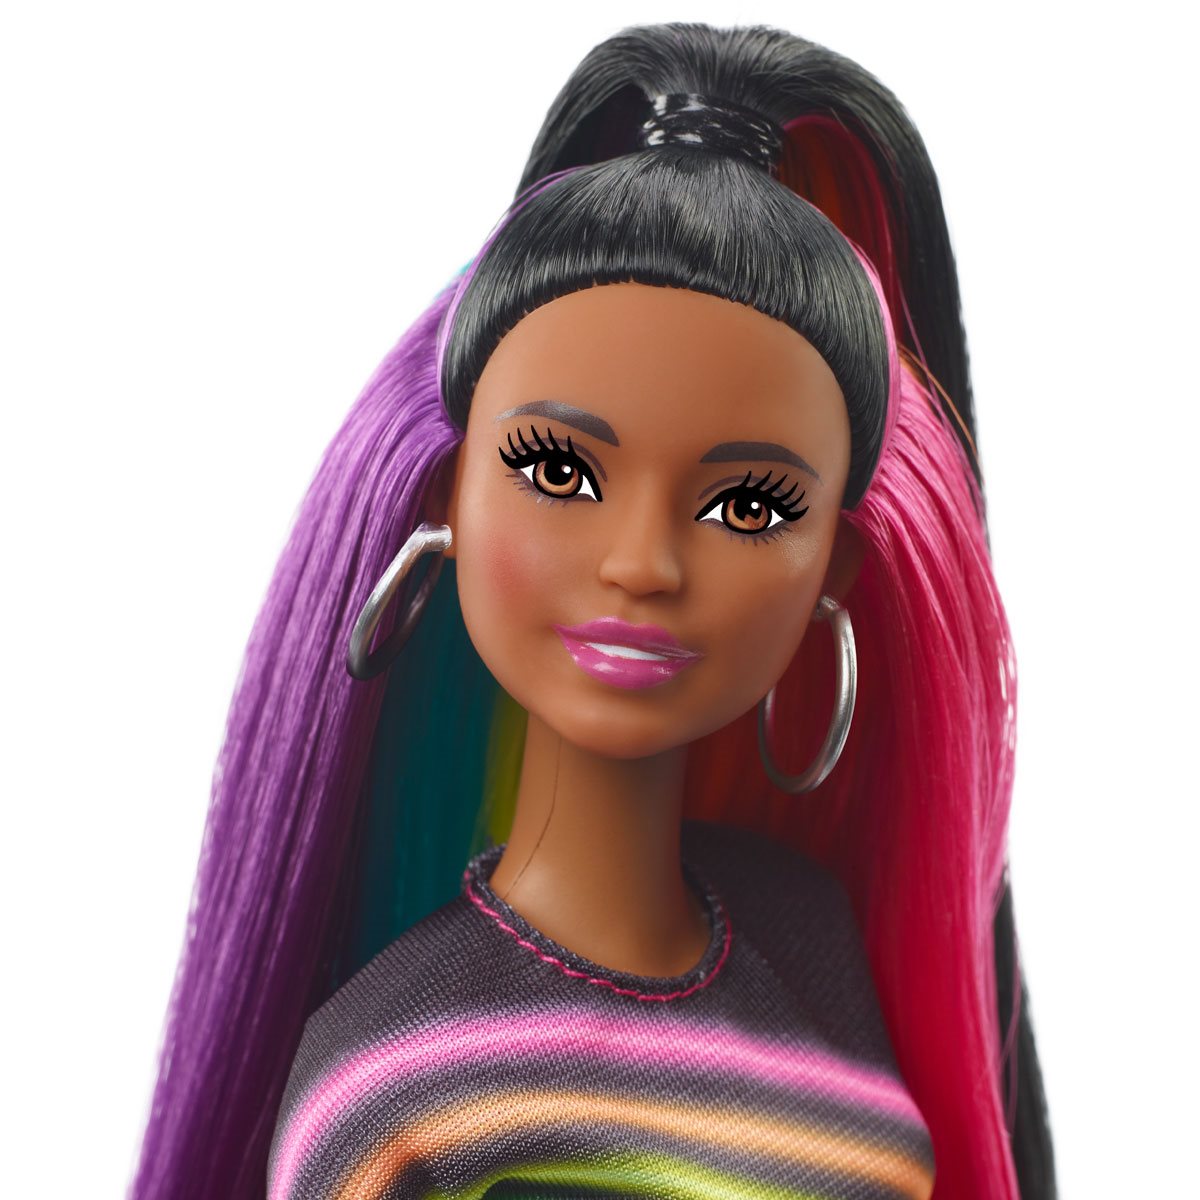 Barbie Rainbow Sparkle Hair Doll - Entertainment Earth